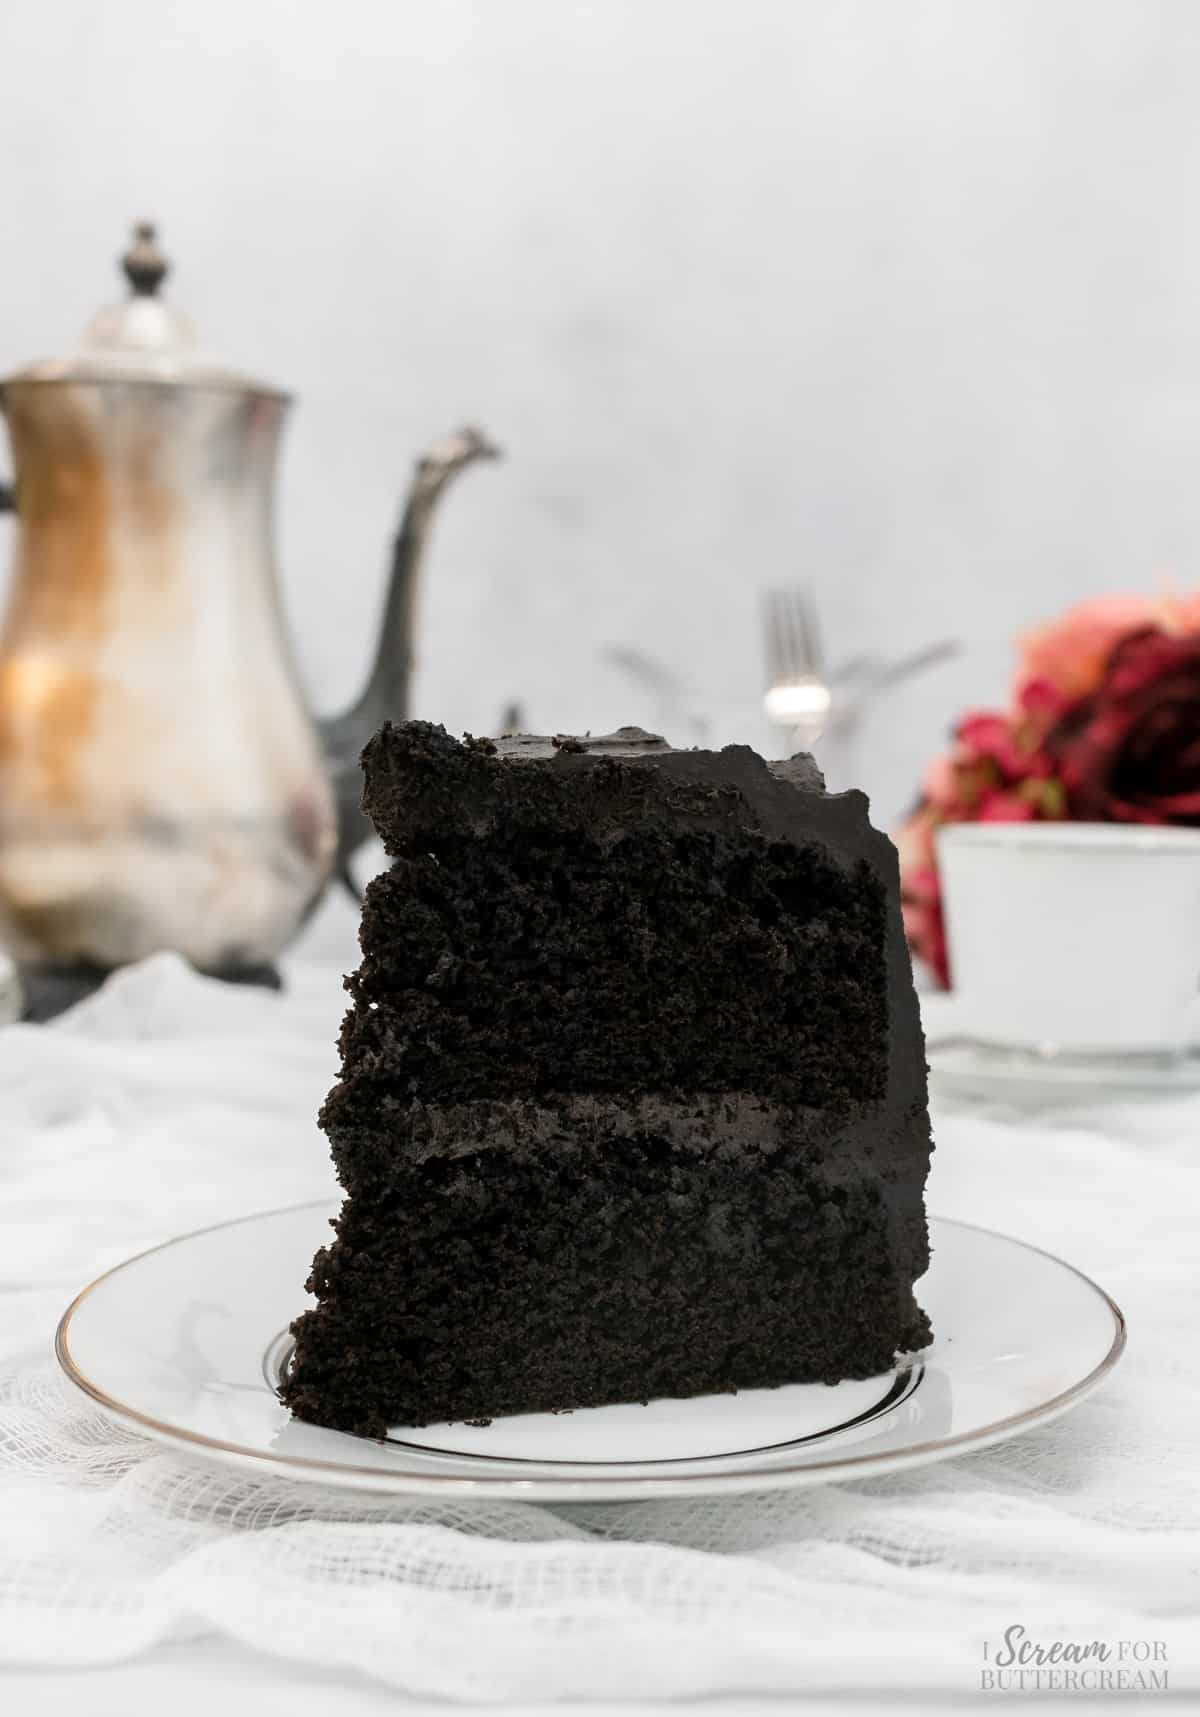 Large slice of black velvet cake on a white plate.